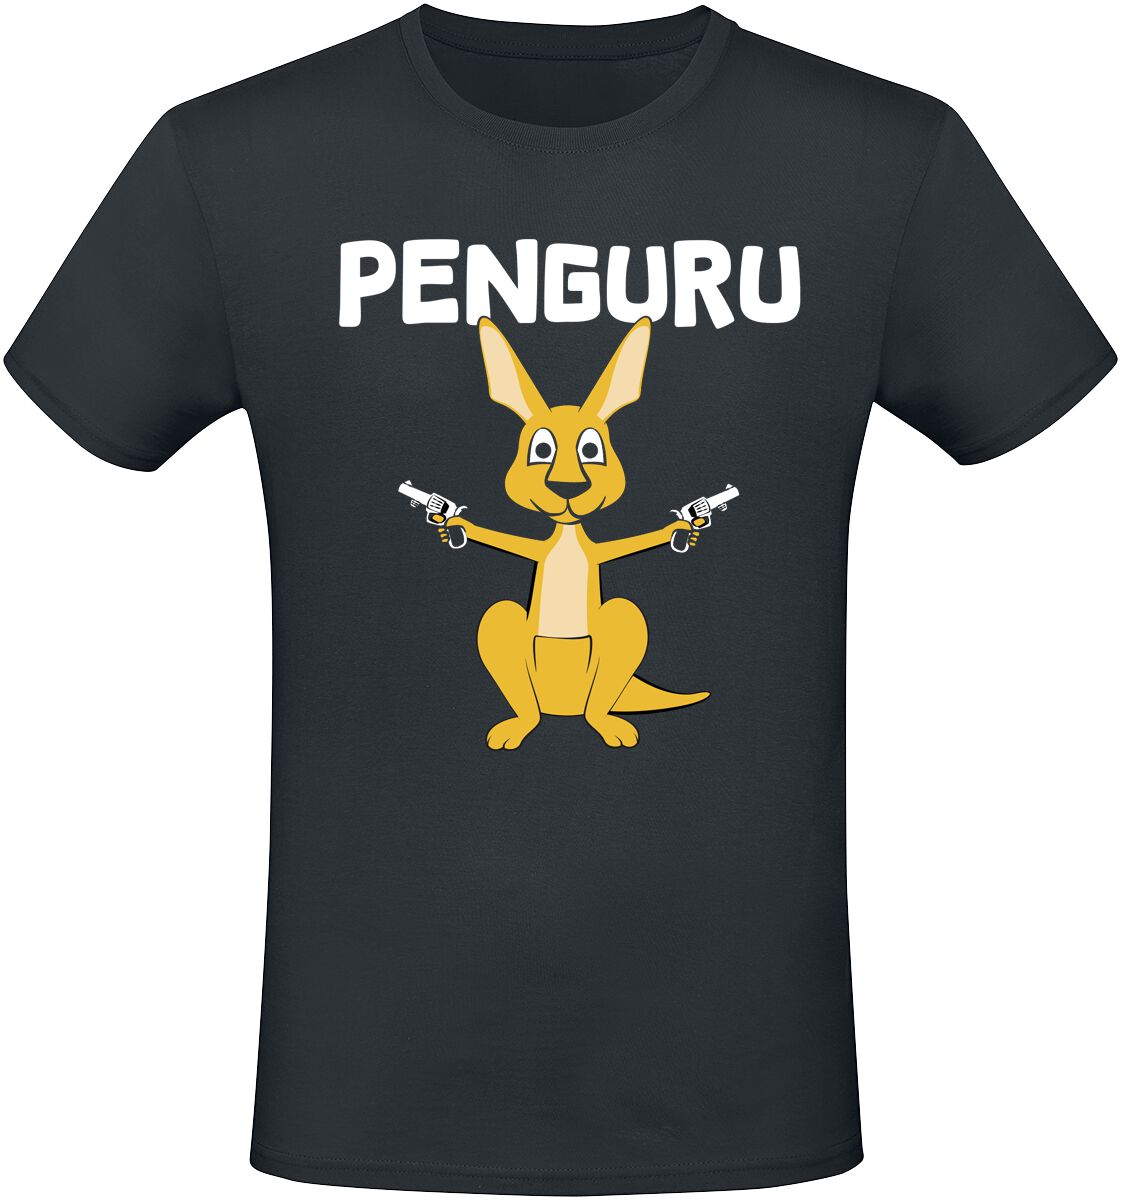 Tierisch T-Shirt - Penguru - M bis 3XL - für Männer - Größe L - schwarz